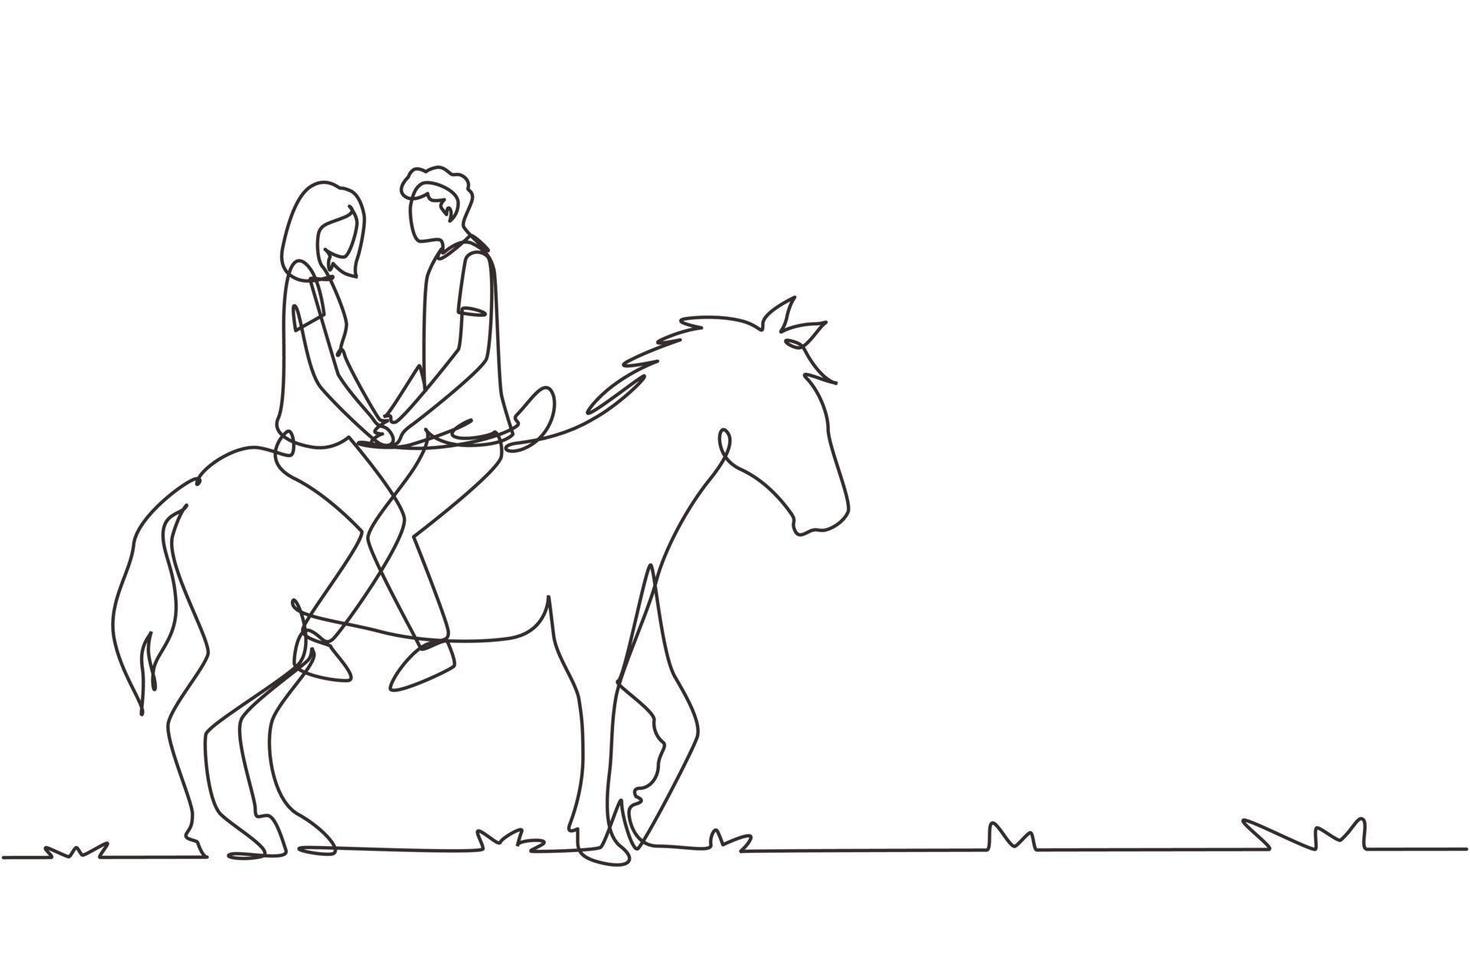 kontinuerlig en rad ritning par ridande hästar ansikte mot ansikte vid solnedgången. glad man gör förslag äktenskap med kvinna. engagemang och kärleksrelation. enda rad rita design vektorgrafisk illustration vektor